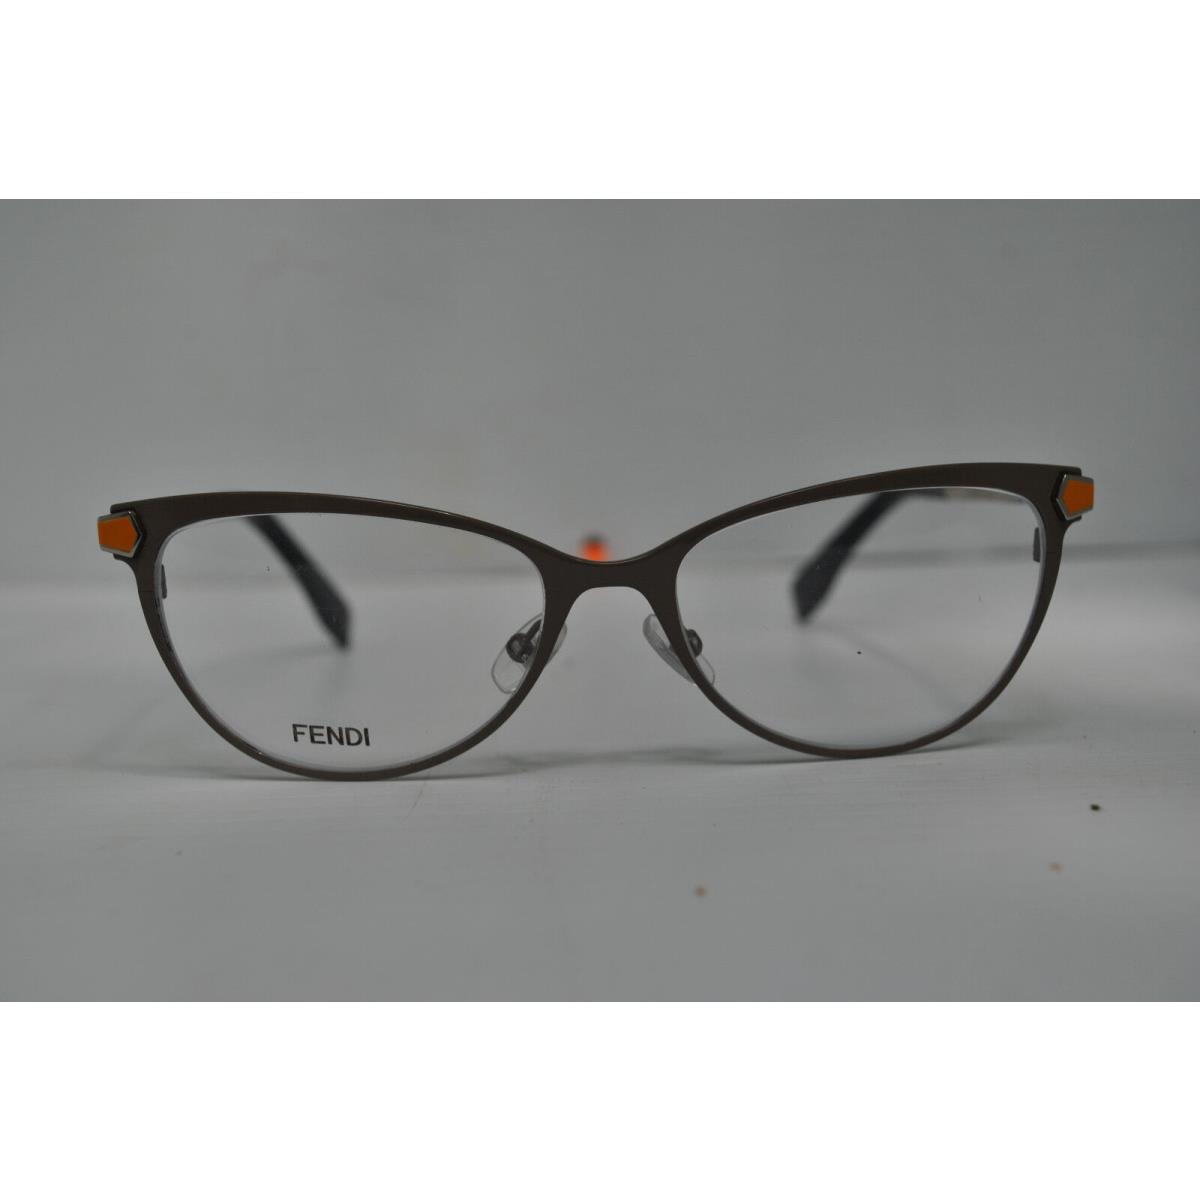 Fendi eyeglasses  - Multi-Color Frame 0